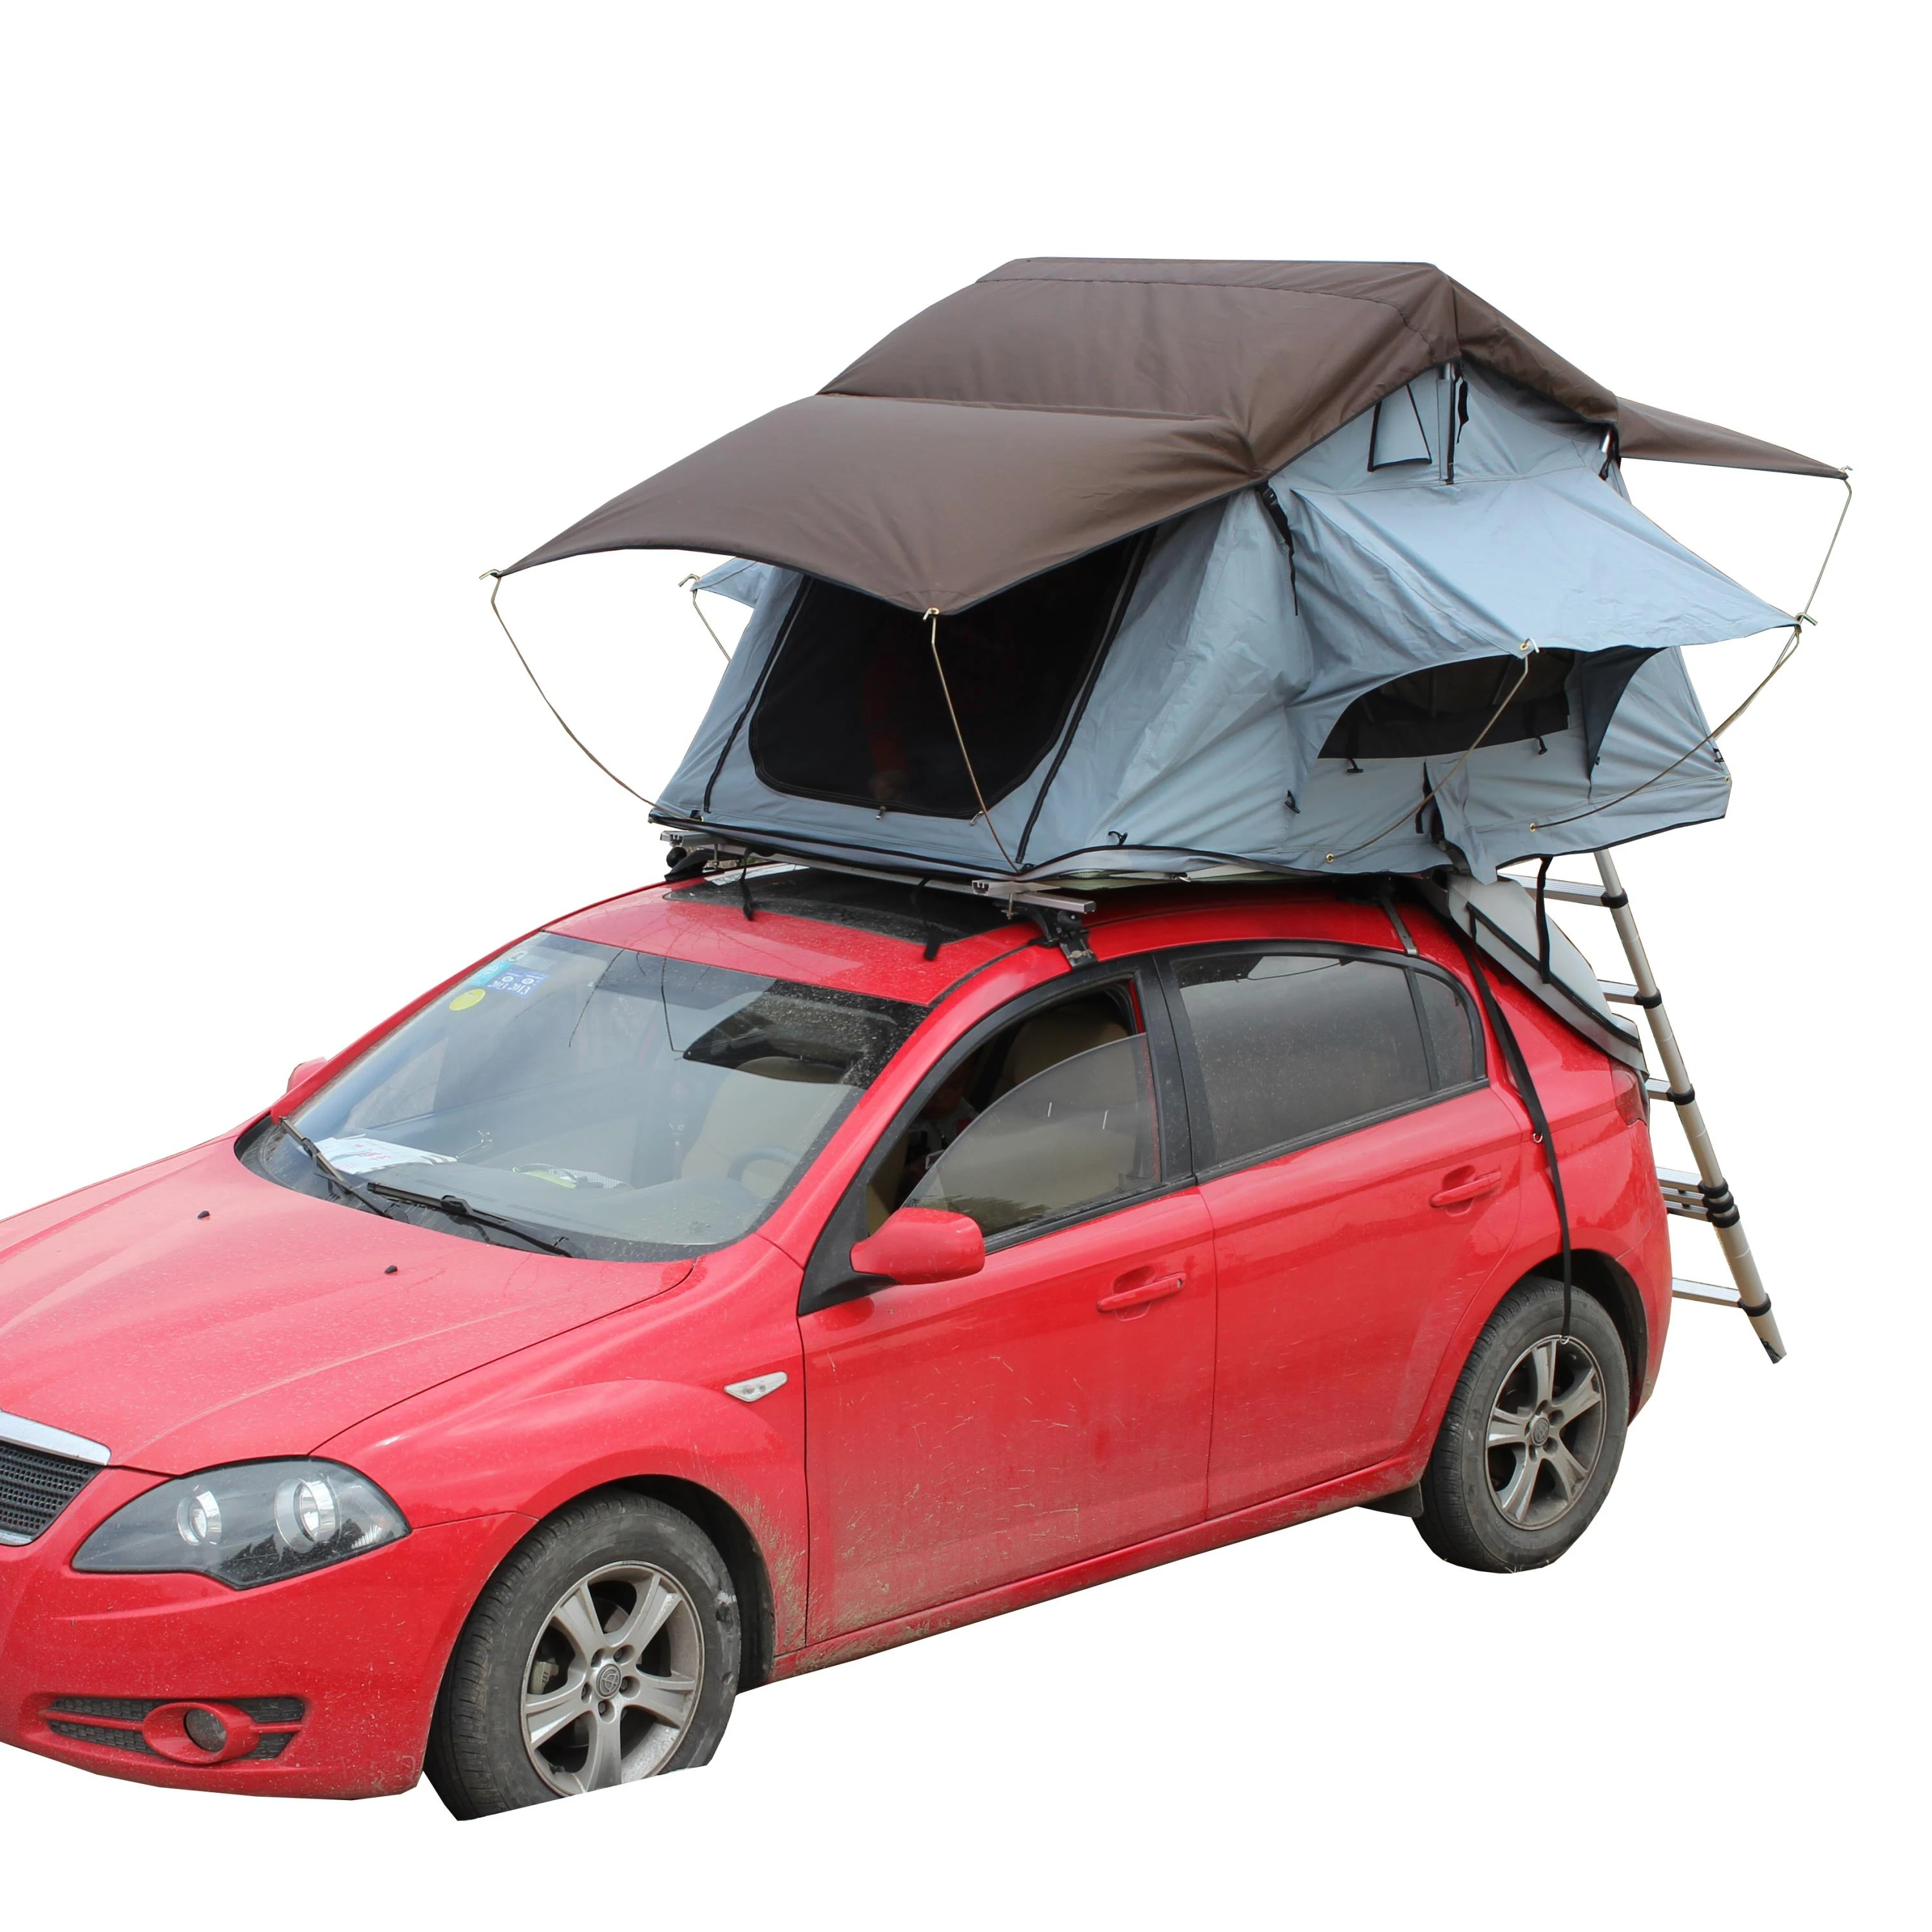 Аксессуары крыши. Палатка на крыше Альфа Ромео 156. Палатка на крышу автомобиля. Тент на крышу автомобиля. Крыша машины.